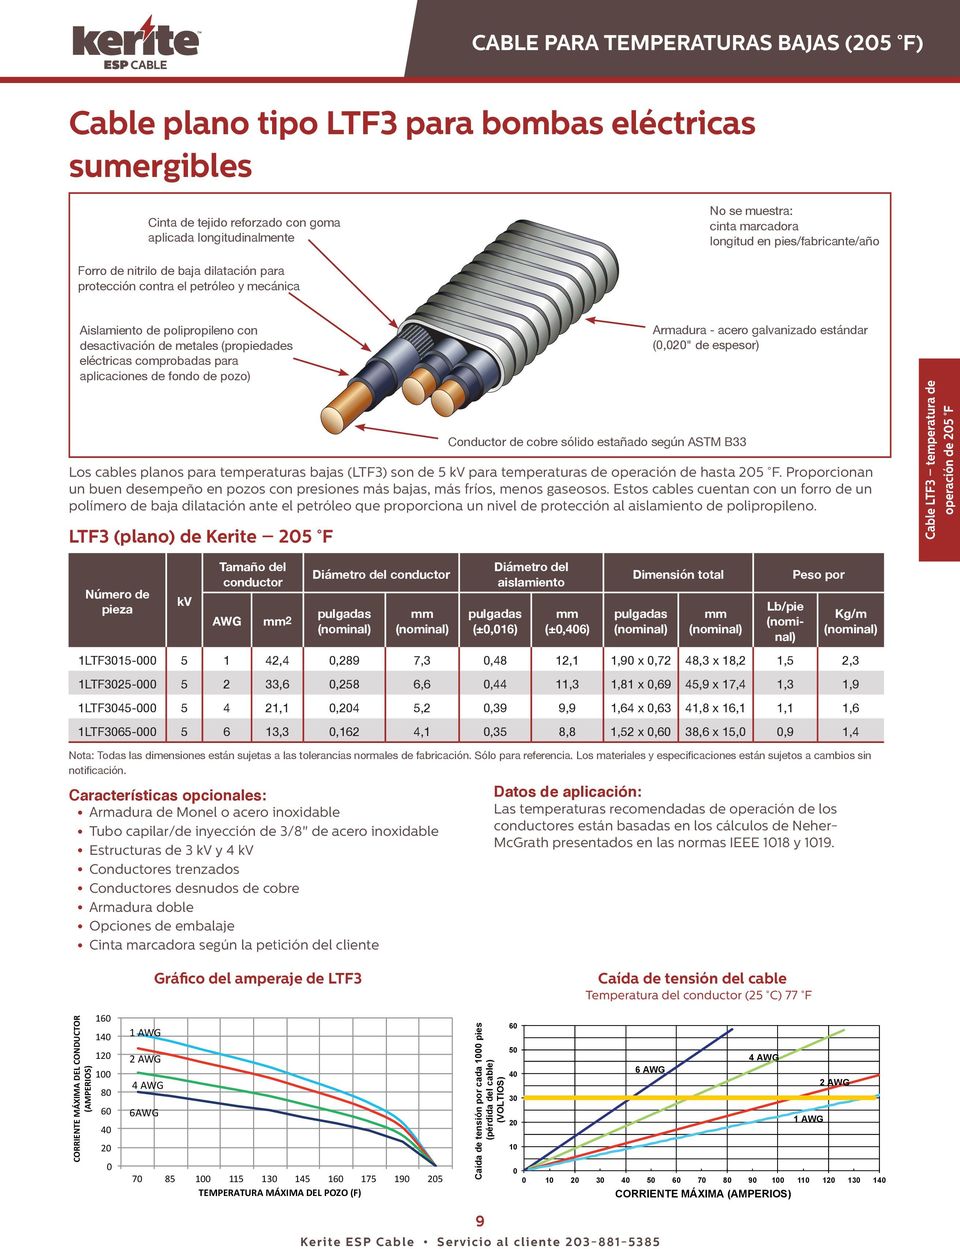 para aplicaciones de fondo de pozo) Conductor de cobre sólido estañado según ASTM B33 Armadura - acero galvanizado estándar (,2" de espesor) Los cables planos para temperaturas bajas (LTF3) son de 5